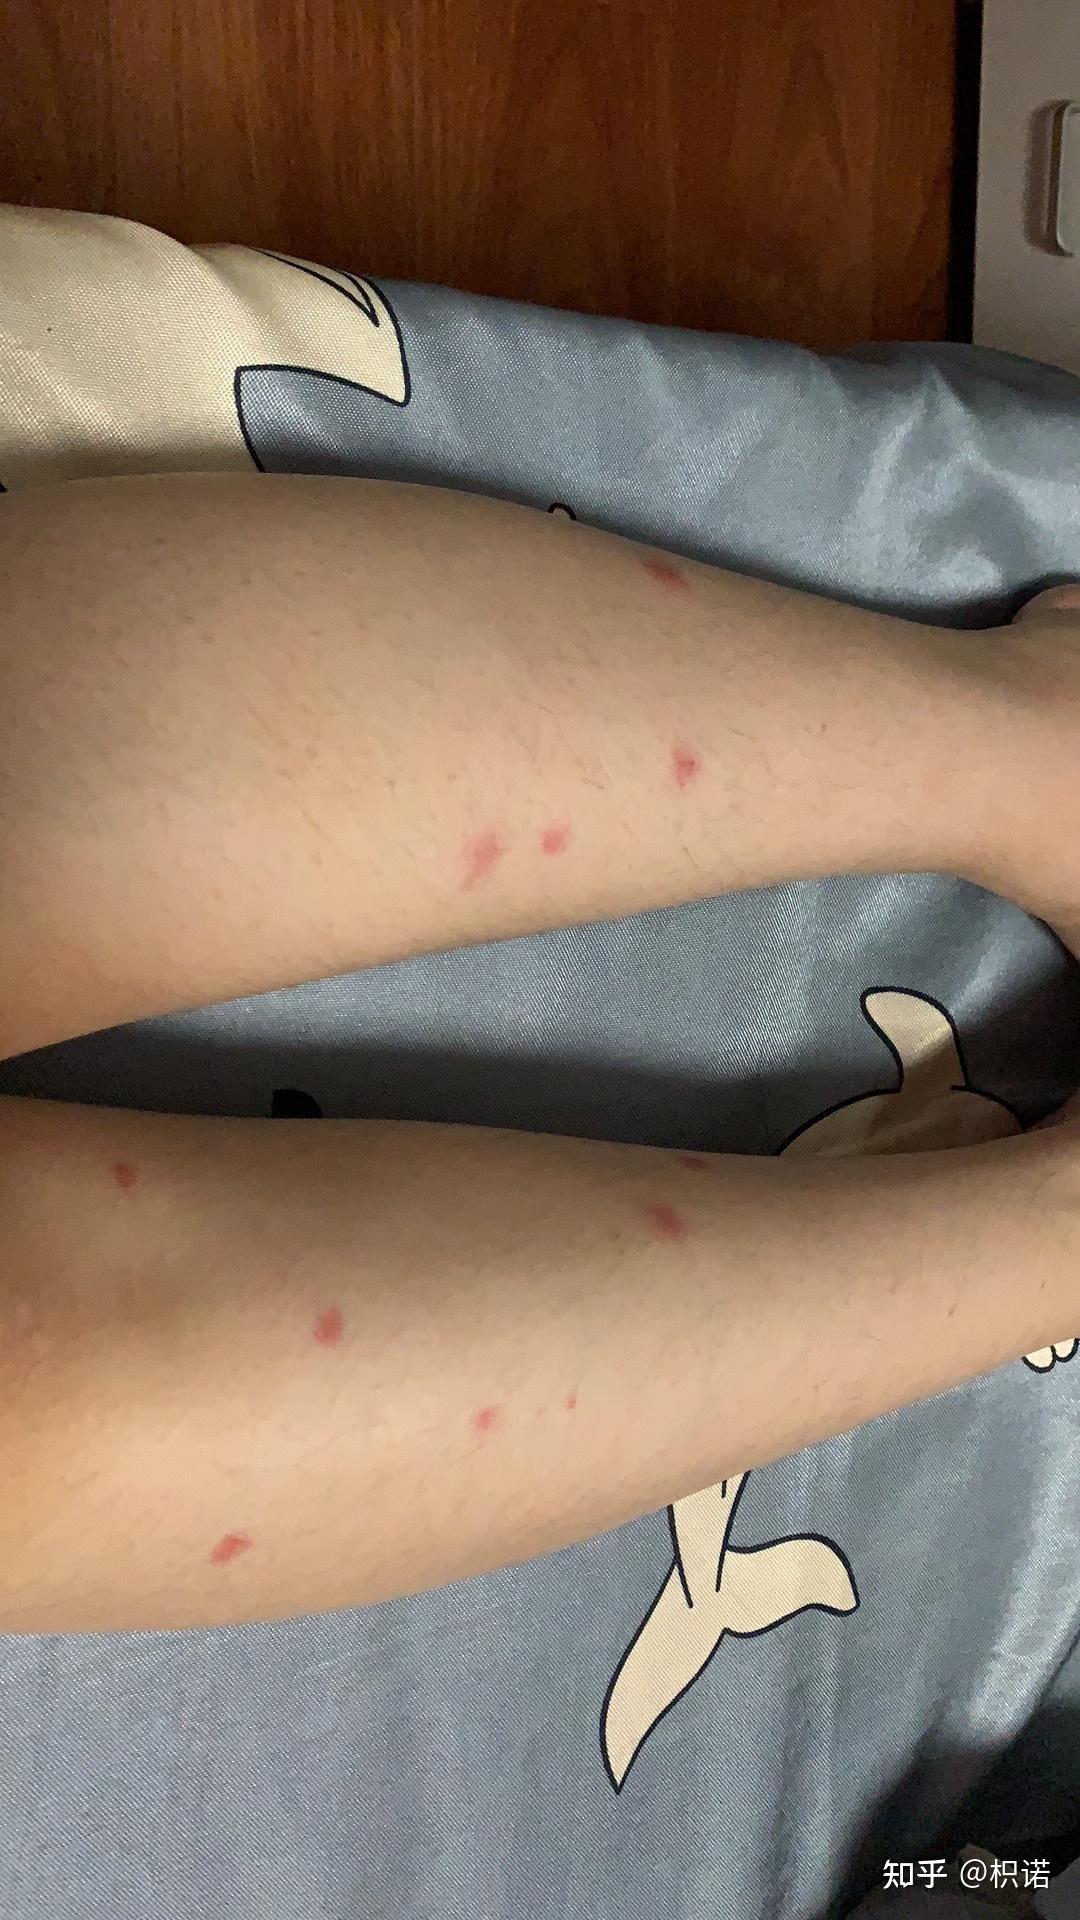 记录一次触目惊心被蚊子咬的经历